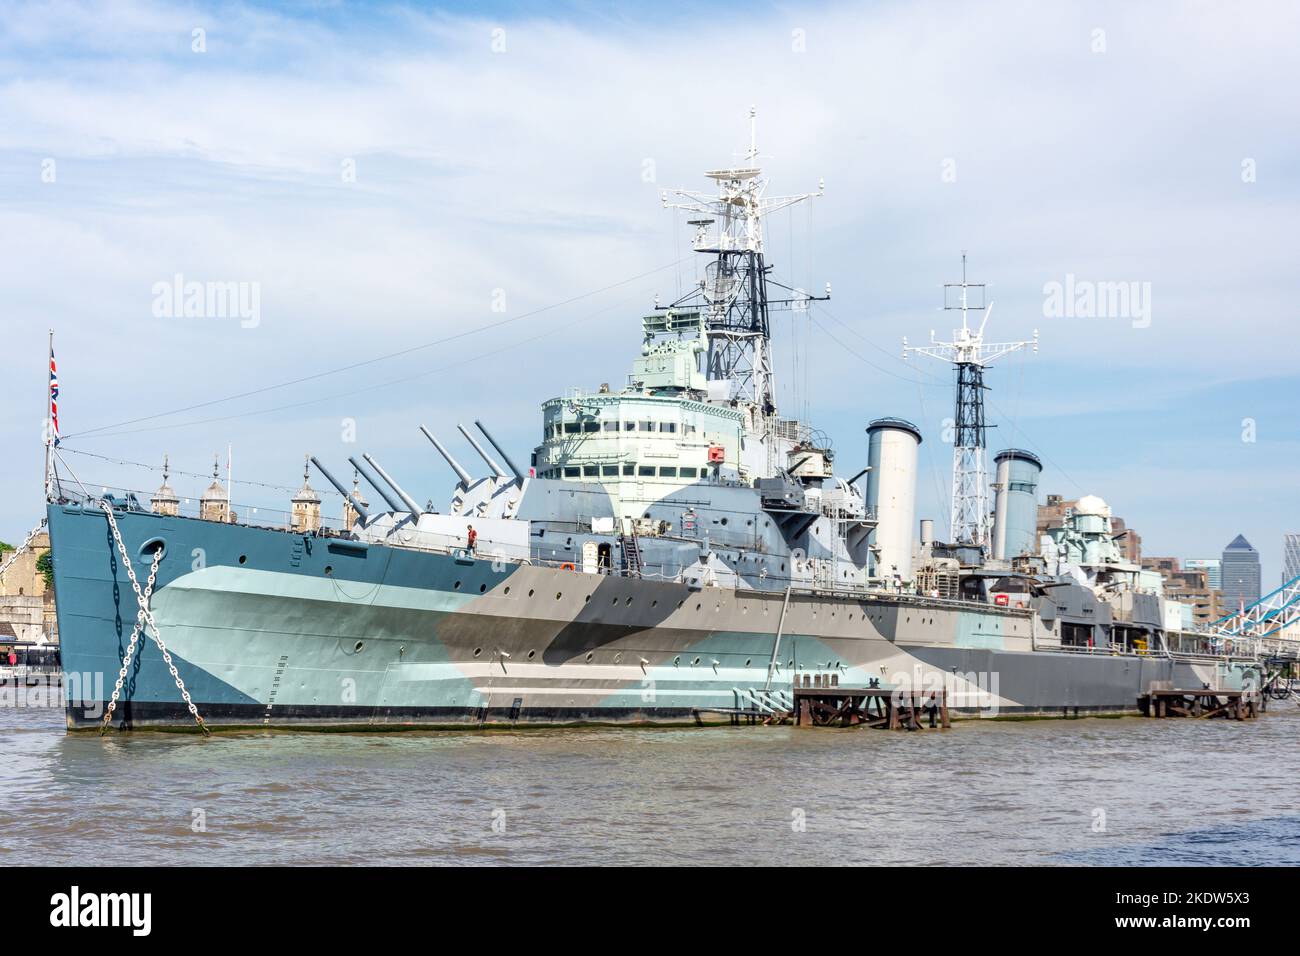 Le HMS Belfast Museum Ship, le Queen's Promenade, Southwark, le London Borough of Southwark, Londres, Angleterre, Royaume-Uni Banque D'Images